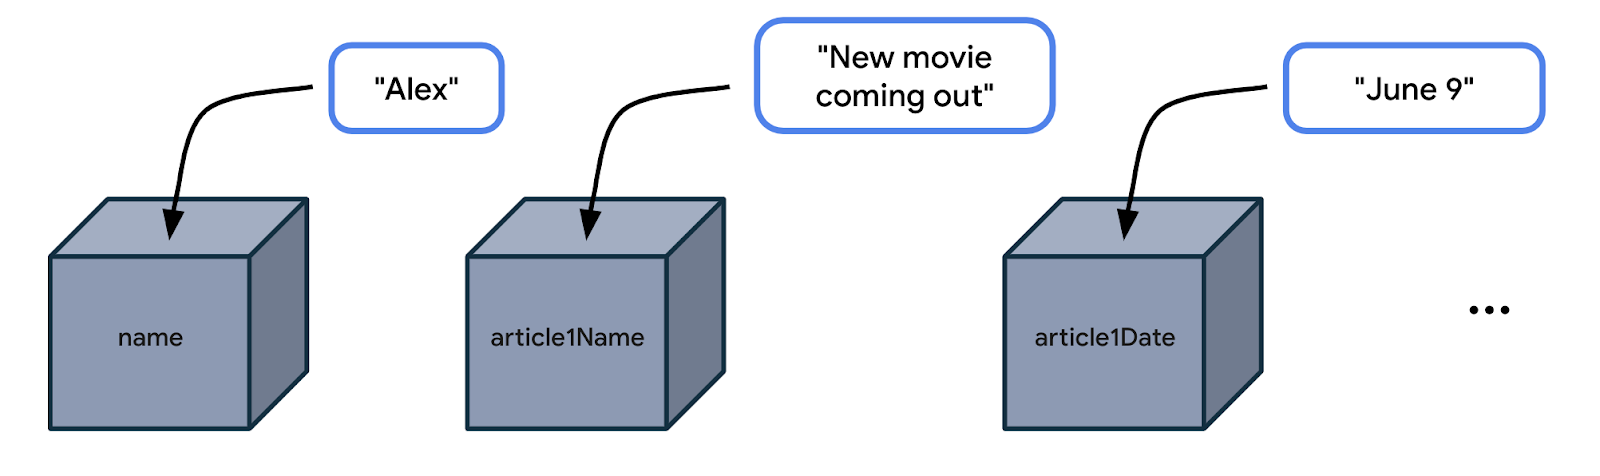 이 그림에서는 상자 3개가 나란히 놓여 있습니다. 첫 번째 상자는 name이라고 합니다. 상자 옆에는 'Alex'라는 라벨이 있습니다. 'Alex'에서 상자를 가리키는 화살표가 있으며 이는 'Alex' 값이 name이라는 상자에 저장되어 있다는 의미입니다. 두 번째 상자는 article1Name입니다. 상자 옆에는 'New movie coming out'이라는 라벨이 있습니다. 이 문자열에서 두 번째 상자를 가리키는 화살표가 있습니다. 즉, 'New movie coming out'이라는 값이 article1Name이라는 상자에 저장됩니다. 세 번째 상자는 article1Date입니다. 상자 옆에는 'June 9'이라는 라벨이 있습니다. 'June 9'에서 세 번째 상자를 가리키는 화살표가 있습니다. 즉, 'June 9'이라는 값이 article1Date라는 상자에 저장됩니다.